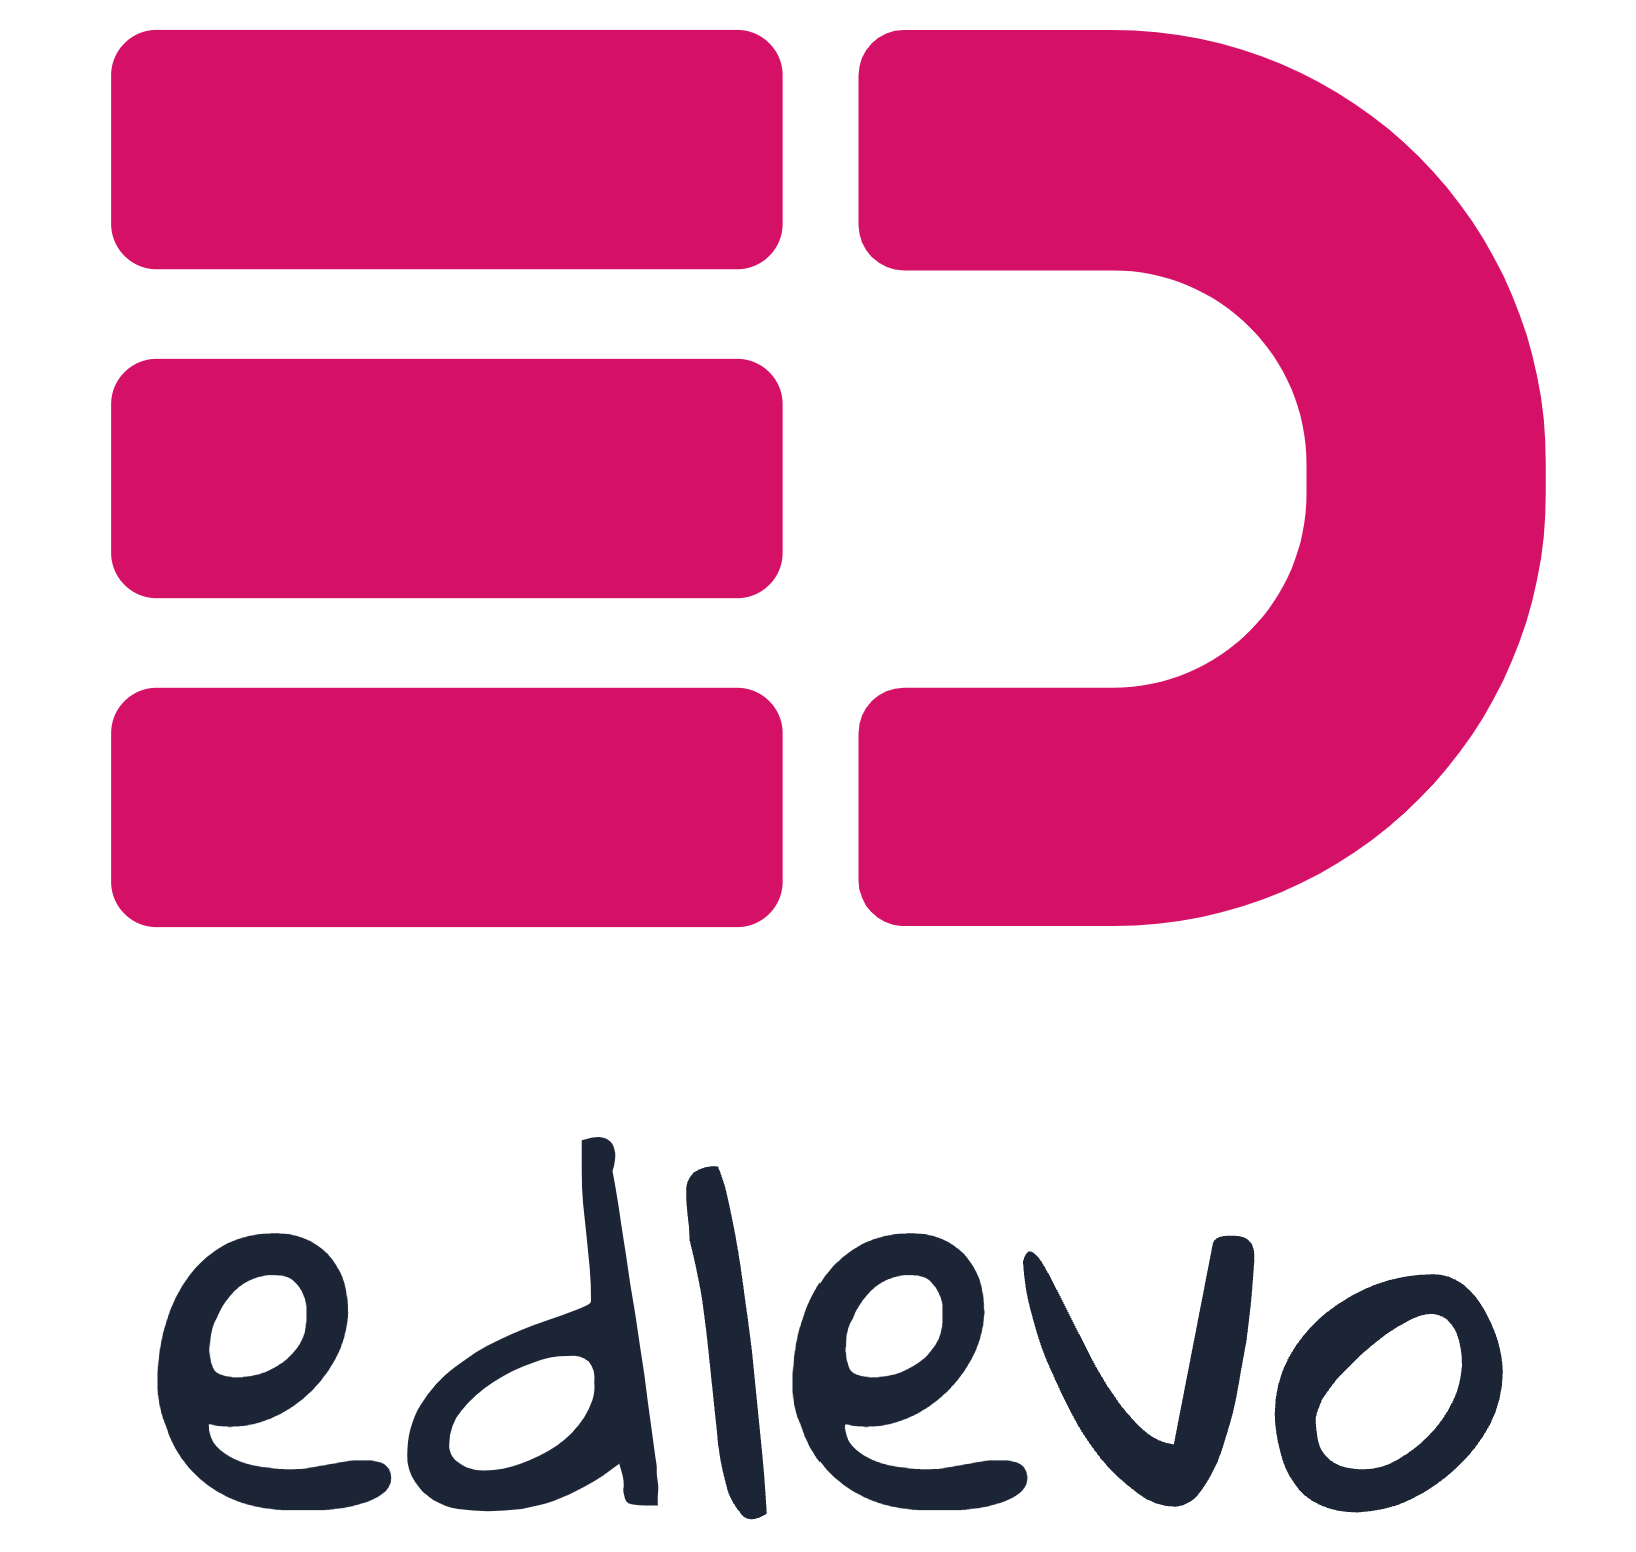 Logga för Edlevo